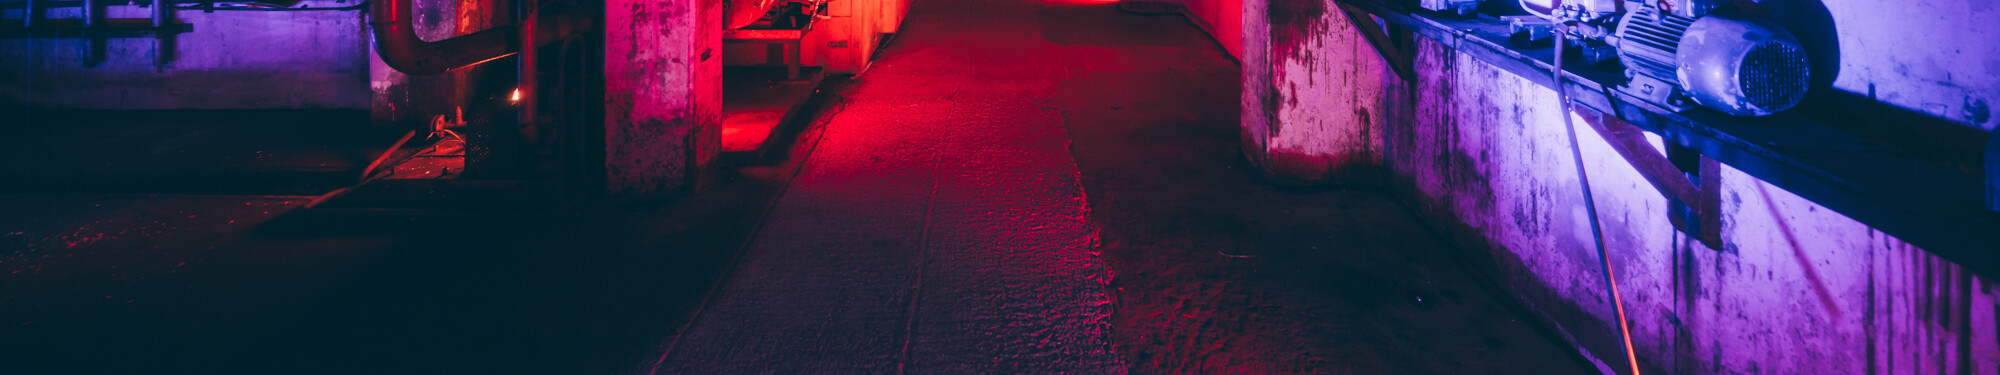 Blick in die ehemalige, mit rotem und violettem Neonlicht beleuchtete Fabrikanlage des heutigen Unesco-Welterbes Zollverein in Essen. © Tourismus NRW e.V./Johannes Höhn